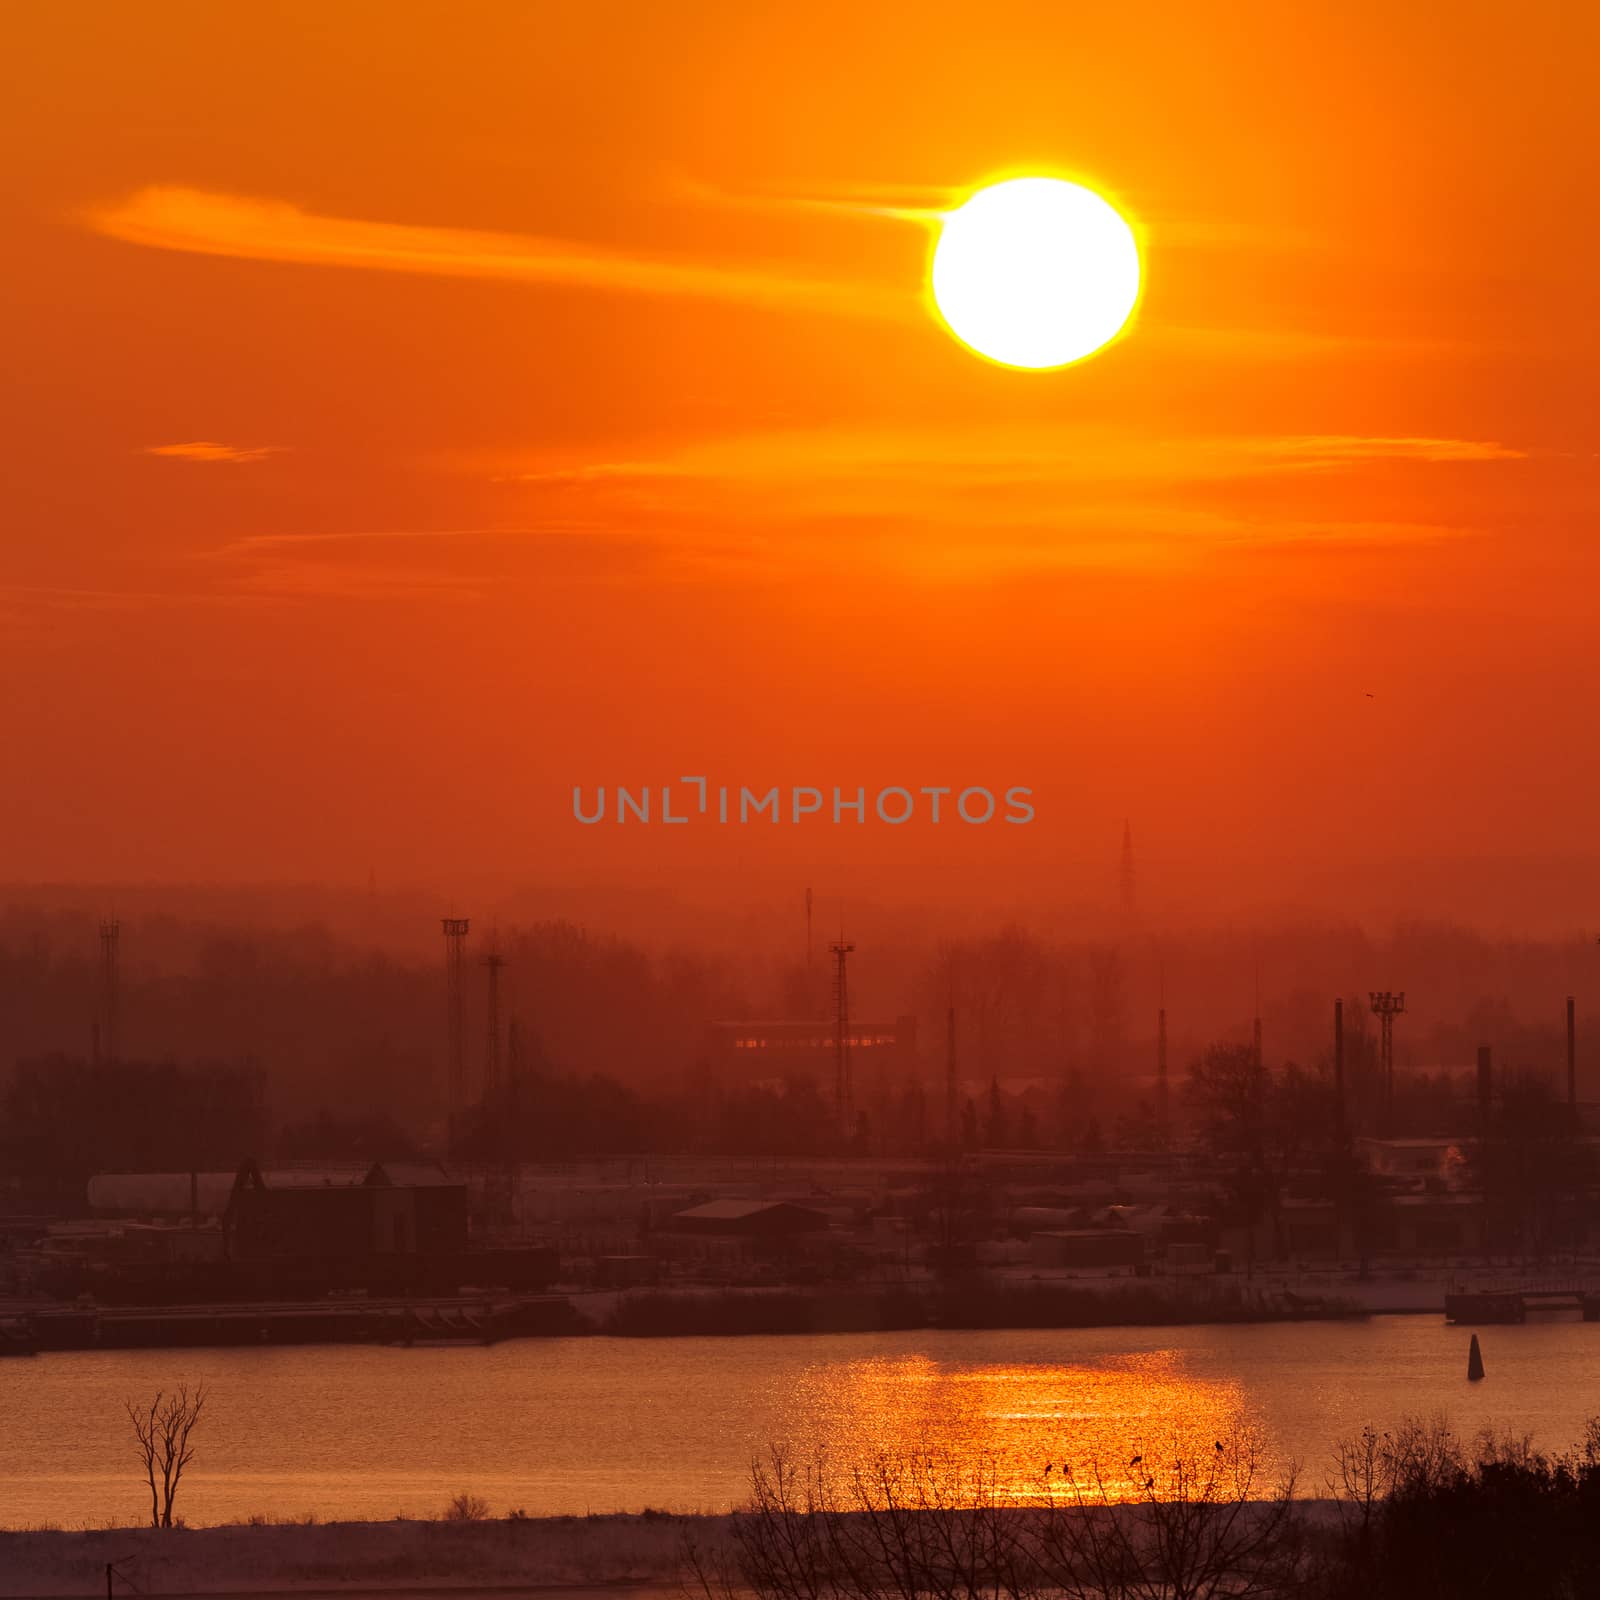 Hot orange sunset over the river. Urban landscape